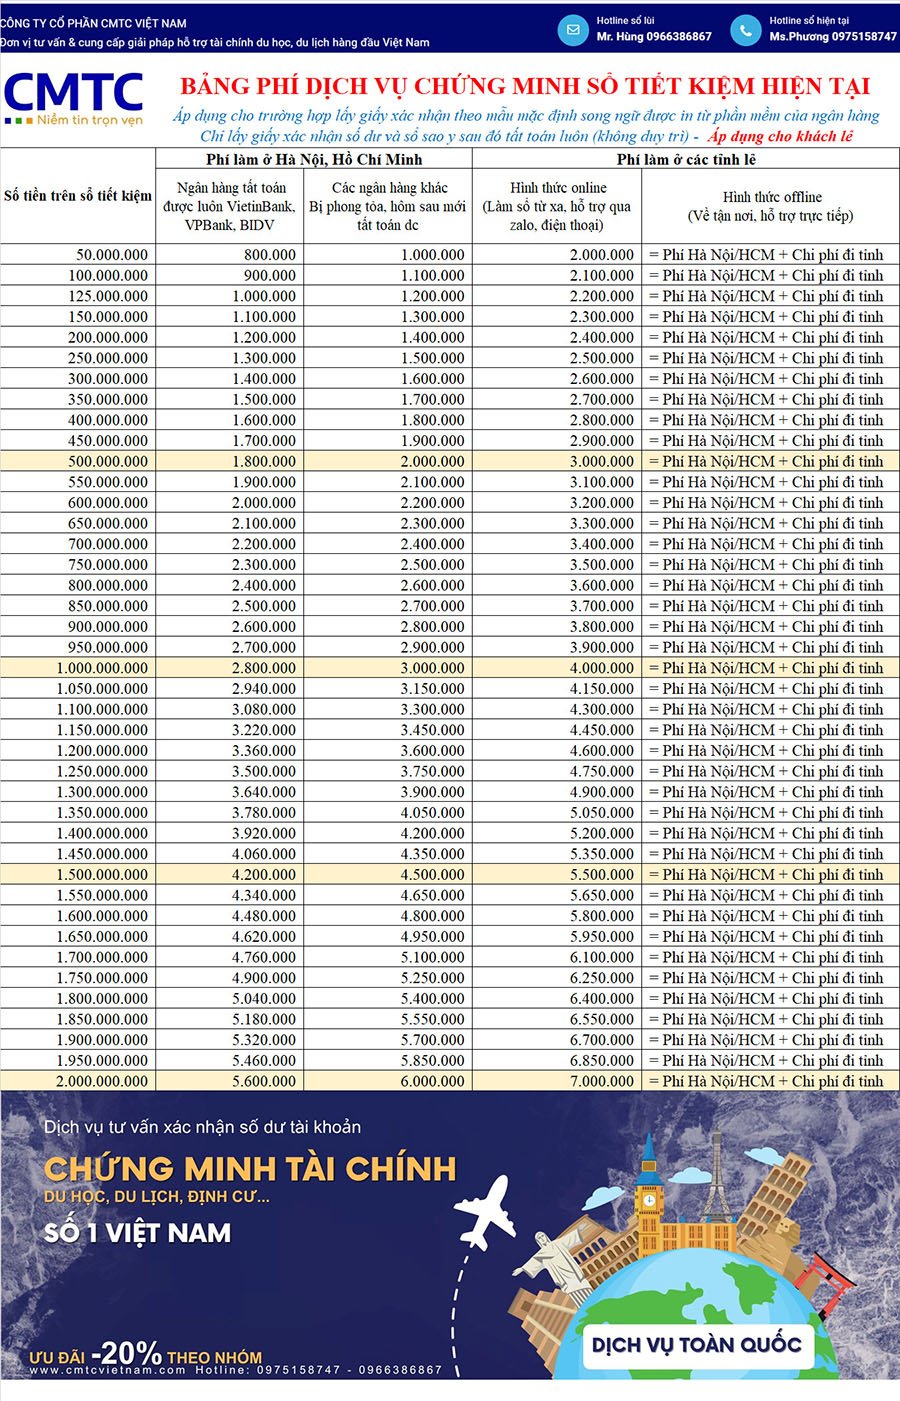 Bảng giá chứng minh tài chính Vietcombank